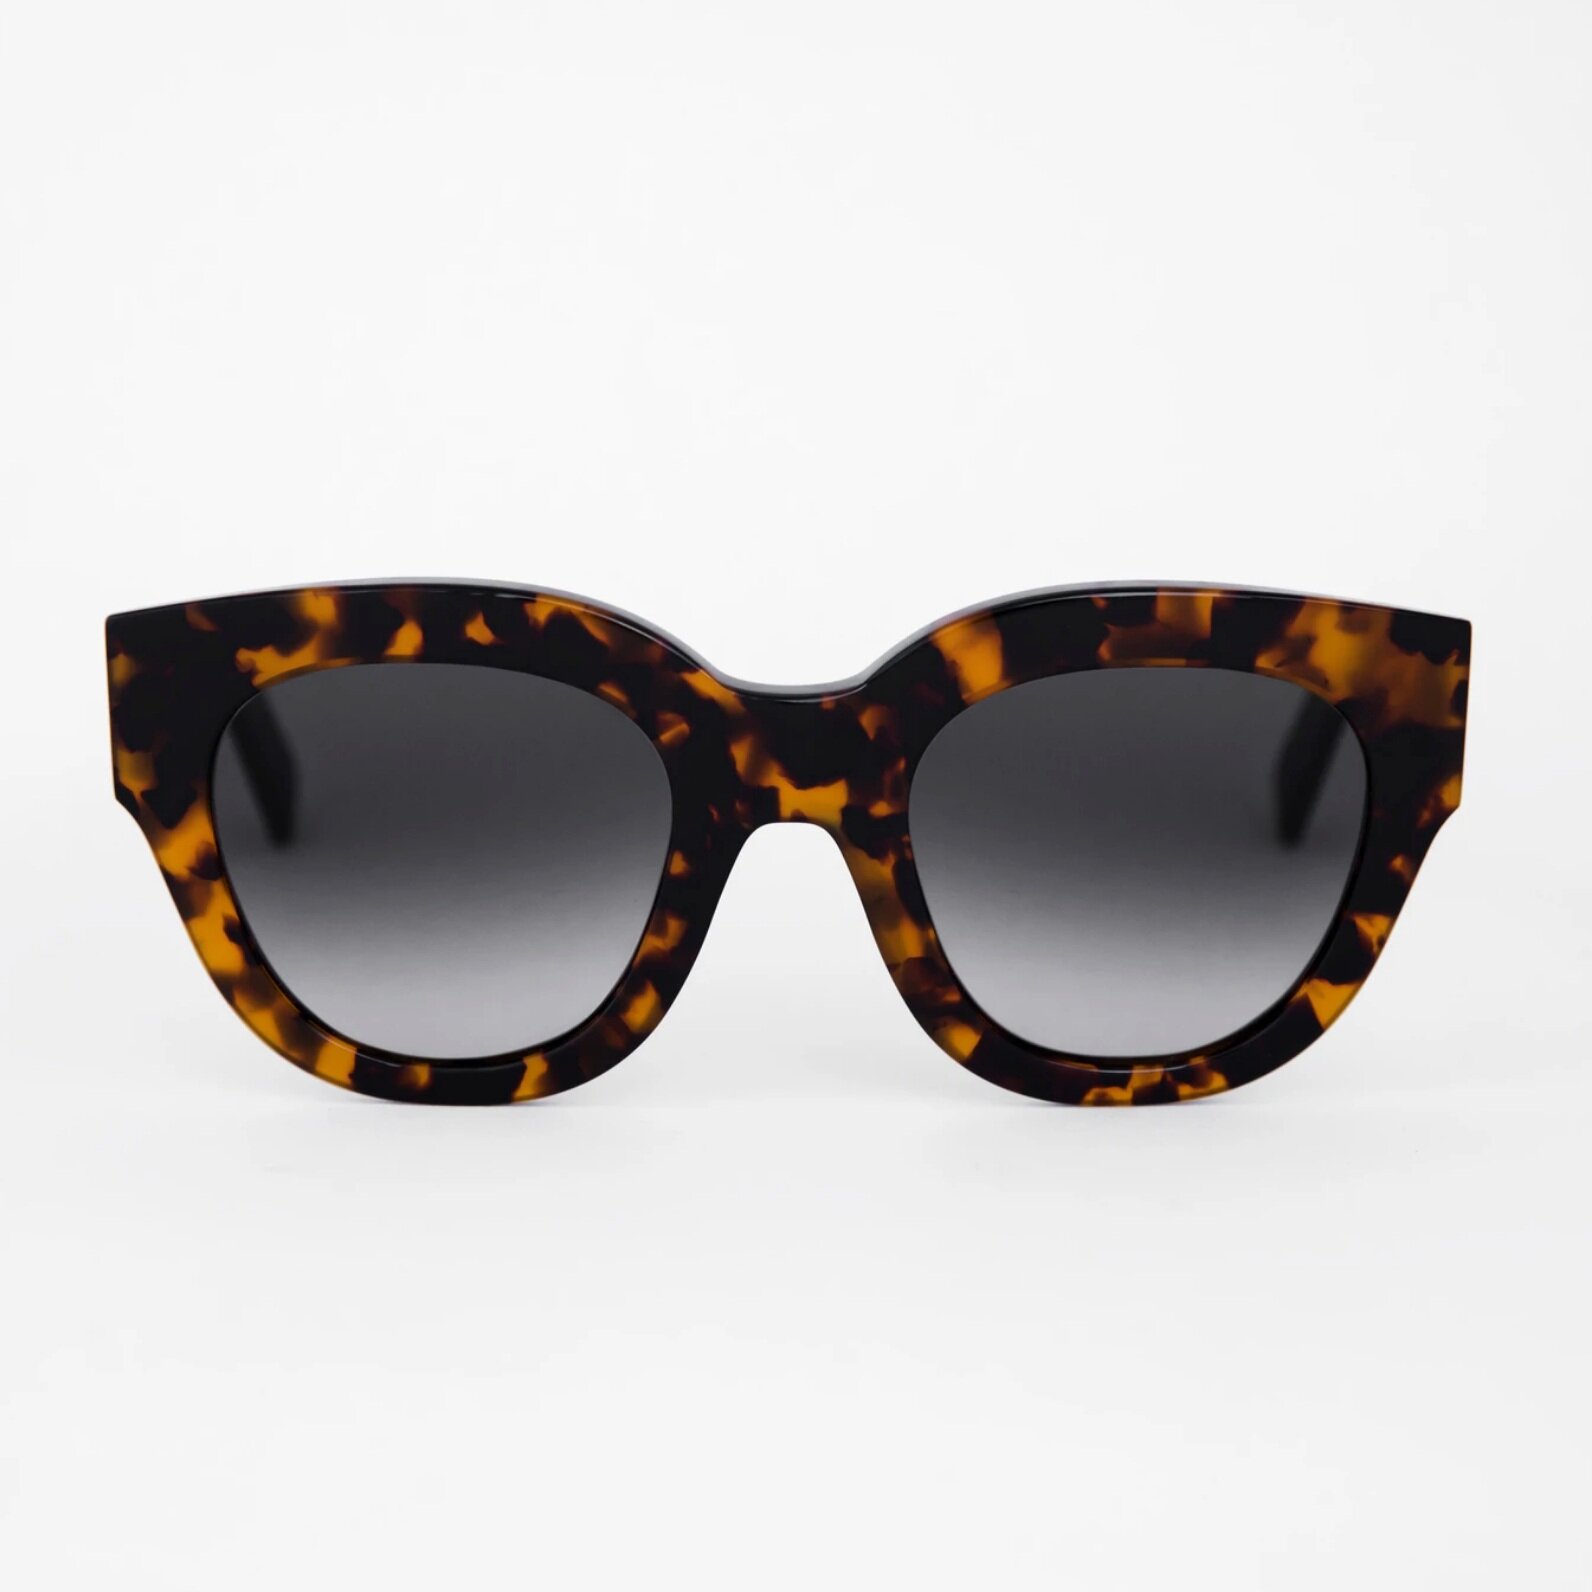  Cleo Havana sunglasses -  Monokel  